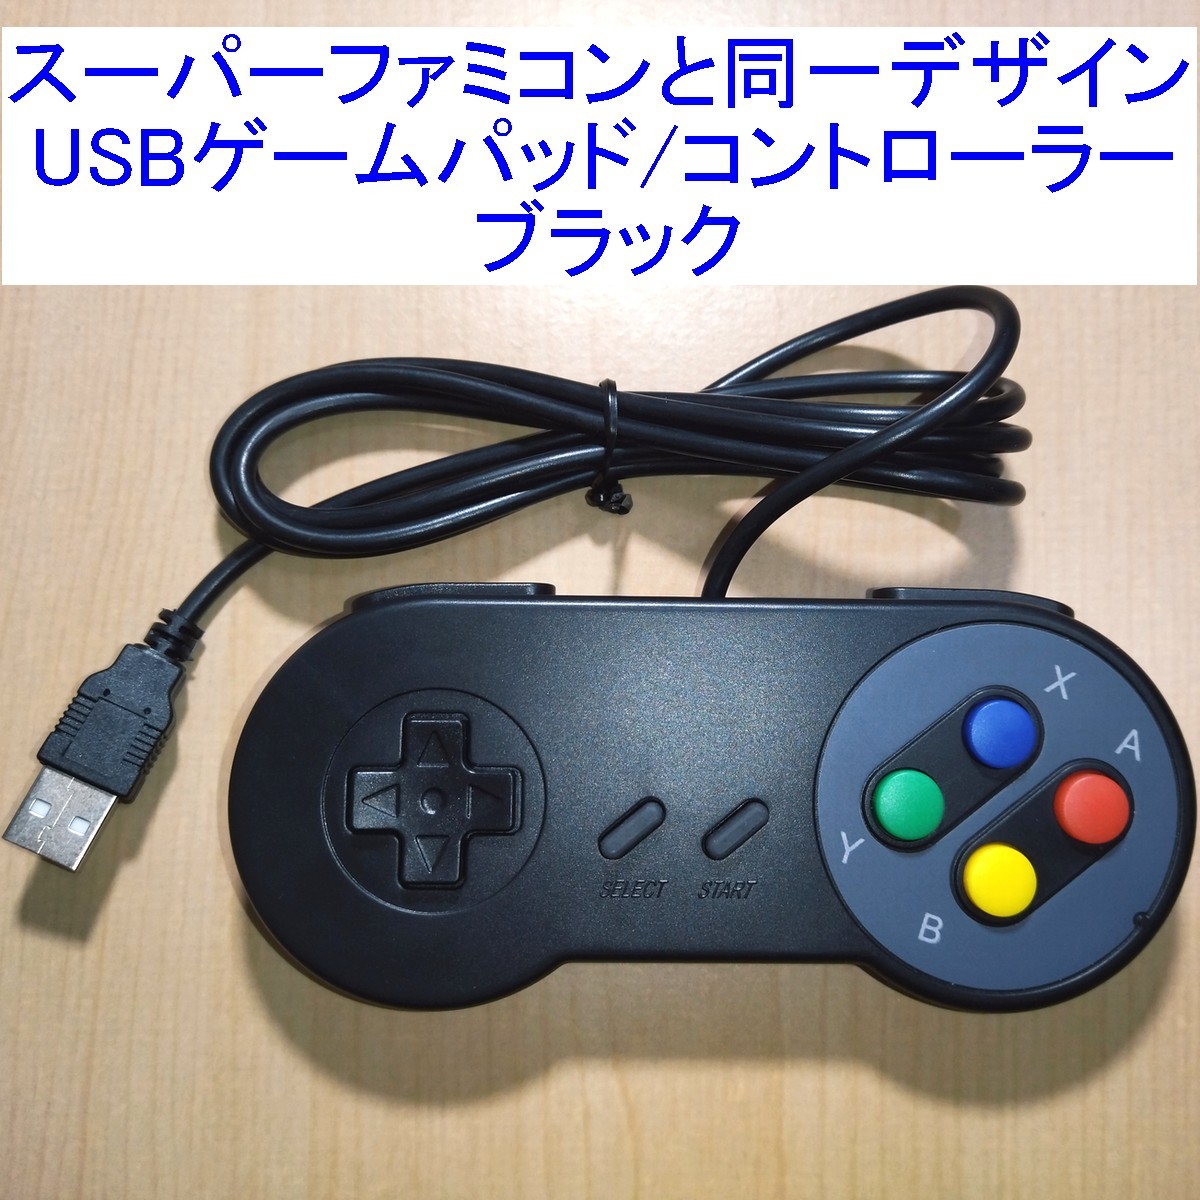 [ стоимость доставки 230 иен ~/ быстрое решение ] Super Famicom (SFC) такой же дизайн. USB контроллер (USB игра накладка ) черный новый товар 